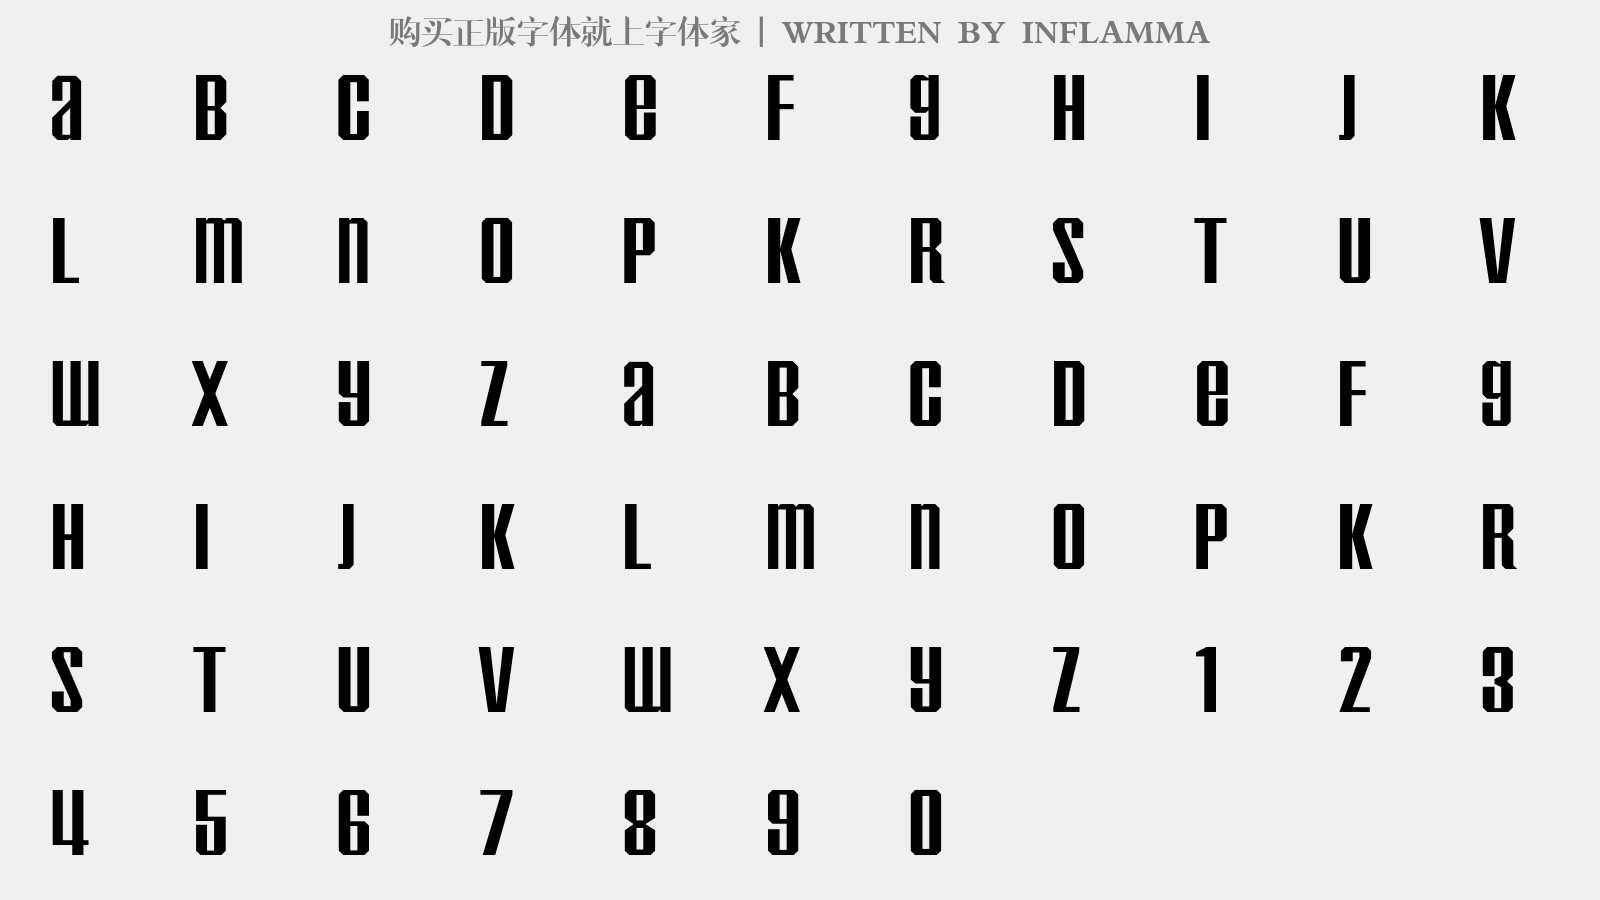 INFLAMMA - 大写字母/小写字母/数字